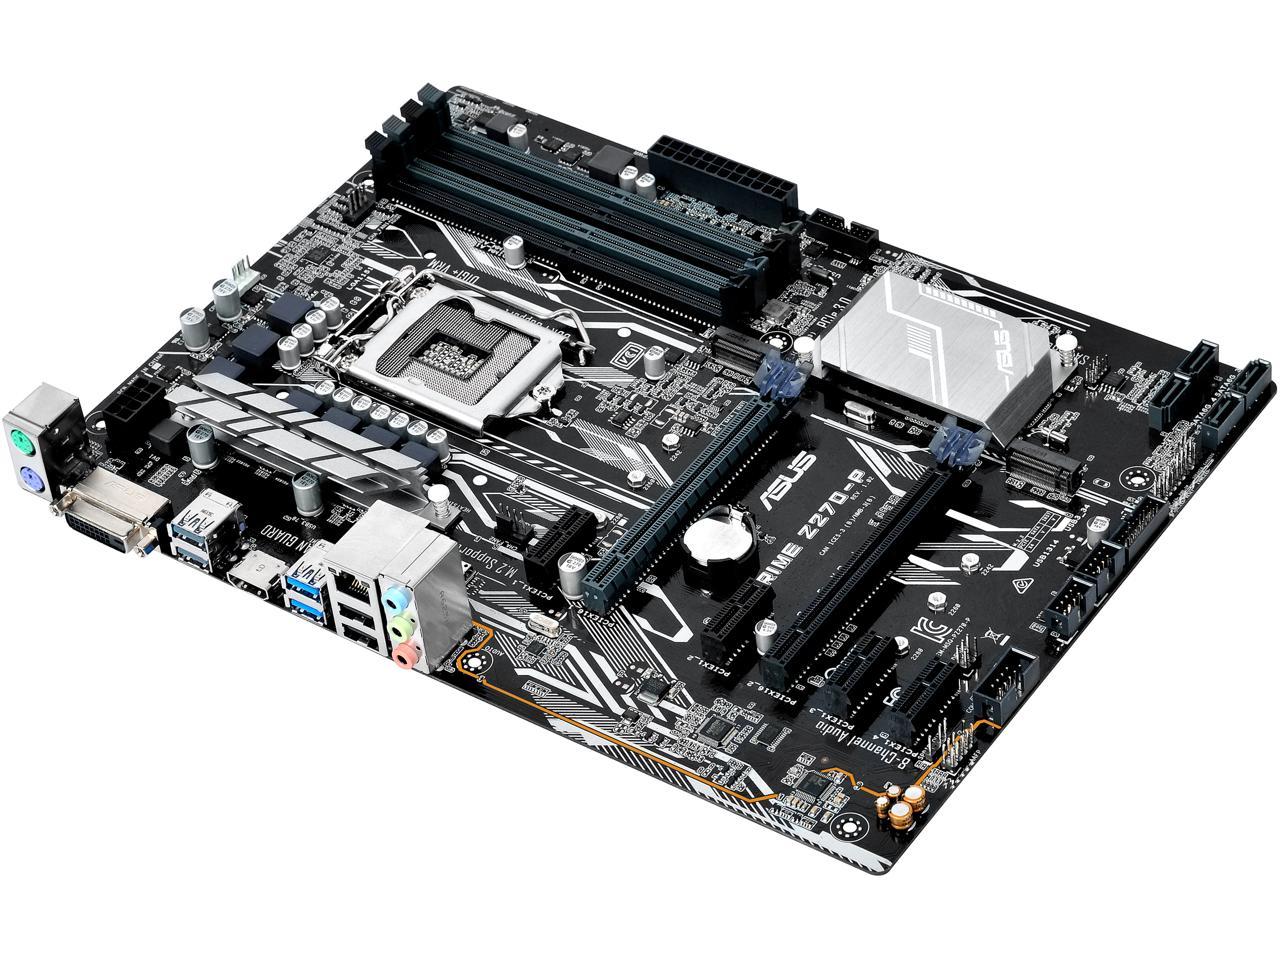 ASUSPRIME Z270-P LGA 1151 6*PCIE 3.0 Motherboard Intel Z270 DDR4 ATX USB3.0 USED 